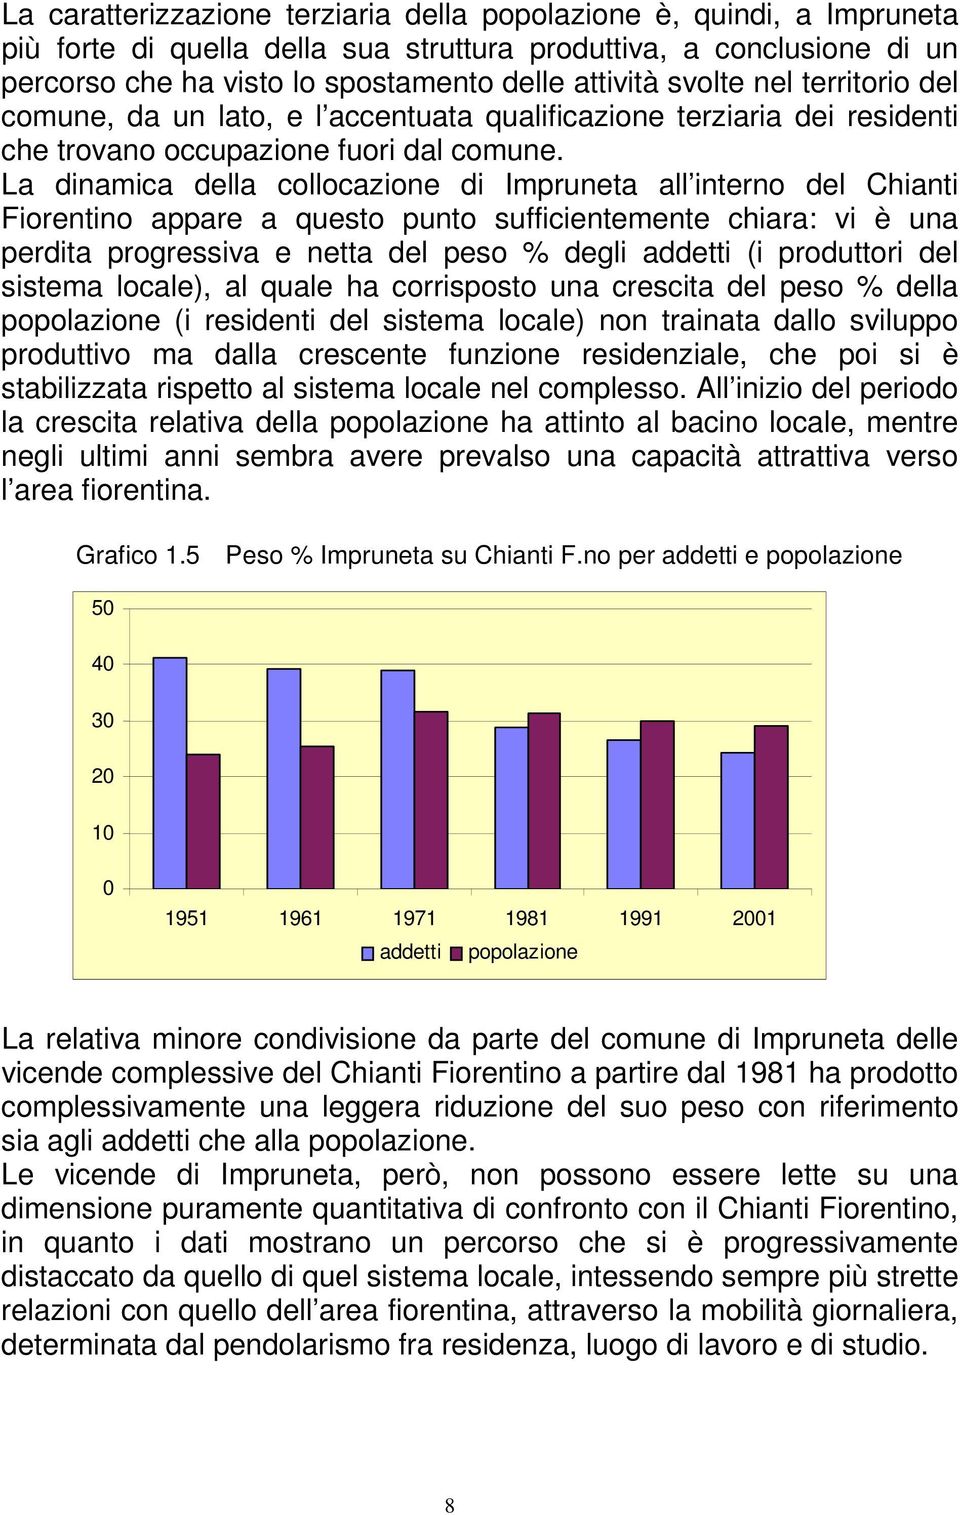 La dinamica della collocazione di Impruneta all interno del Chianti Fiorentino appare a questo punto sufficientemente chiara: vi è una perdita progressiva e netta del peso % degli addetti (i